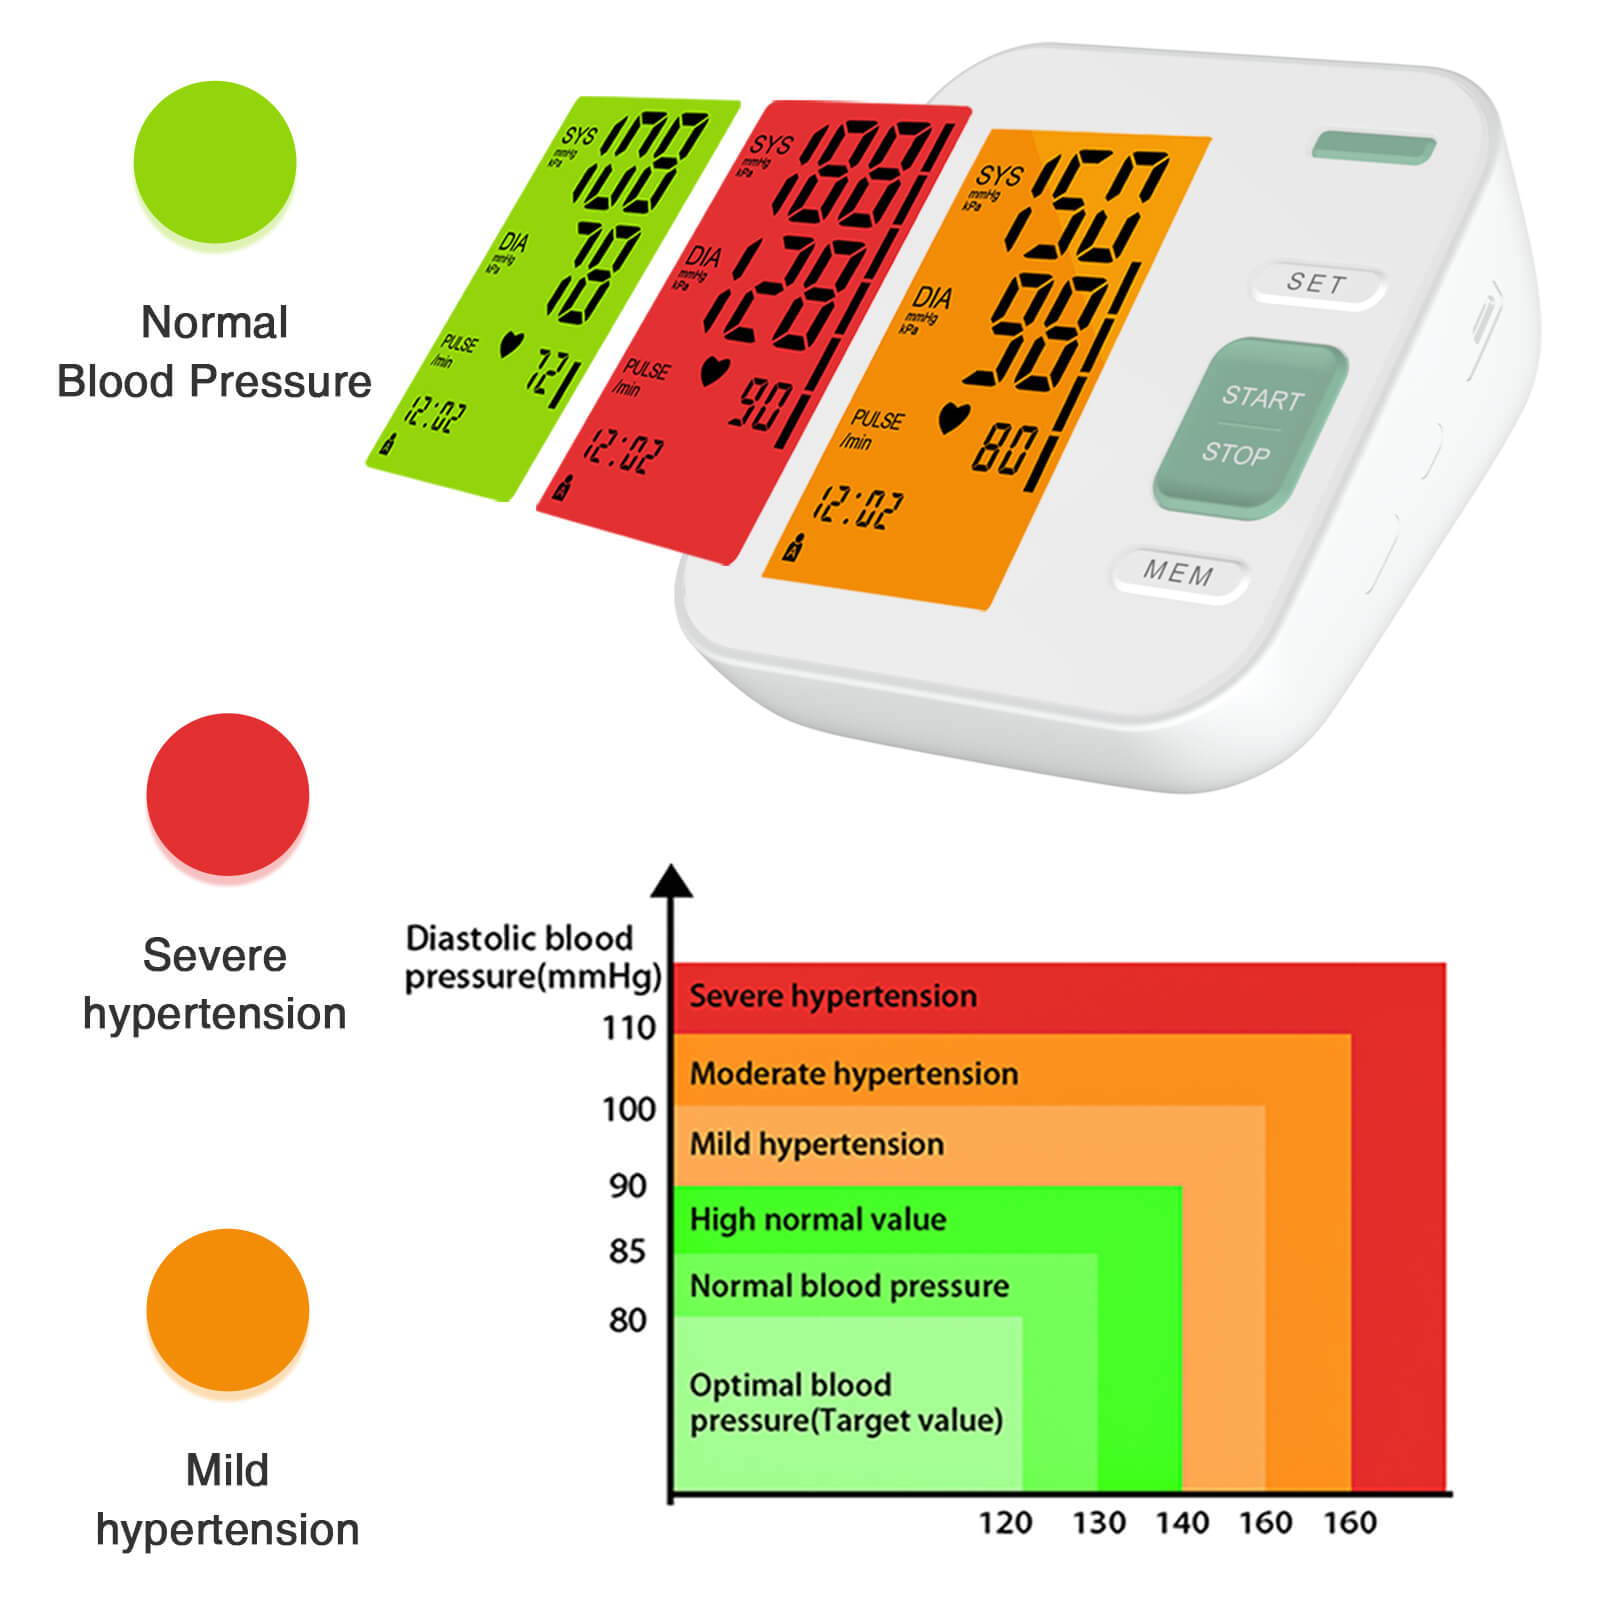 يوضح الرسم البياني مستويات مختلفة من ارتفاع ضغط الدم باللون الأحمر والأخضر والبرتقالي